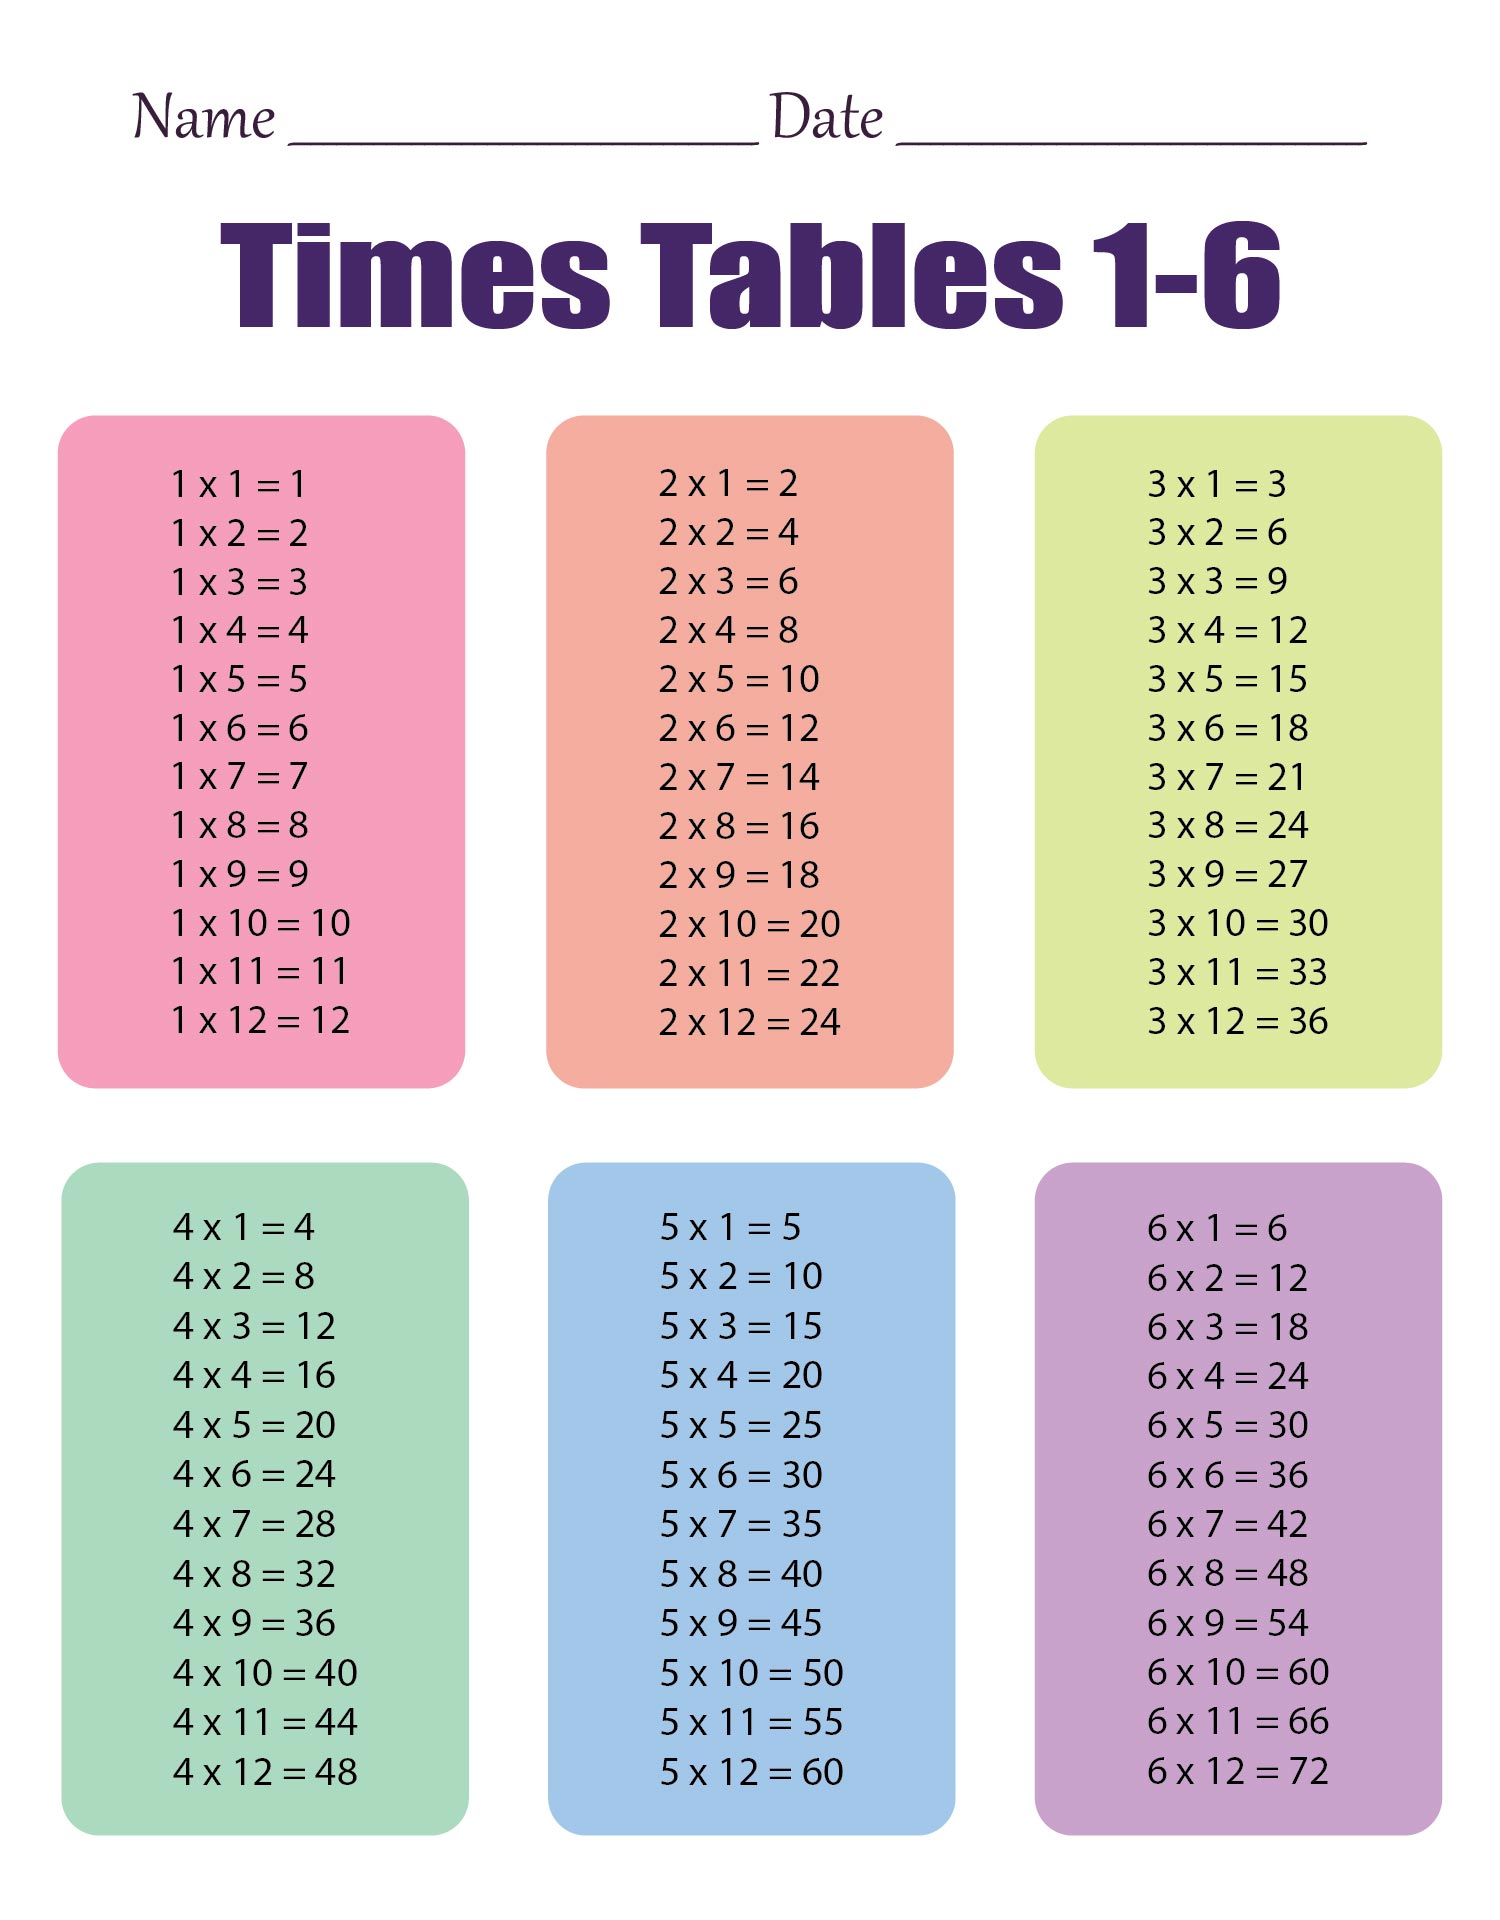 multiplication-6-worksheets-multiplication-worksheets-division-worksheets-math-division